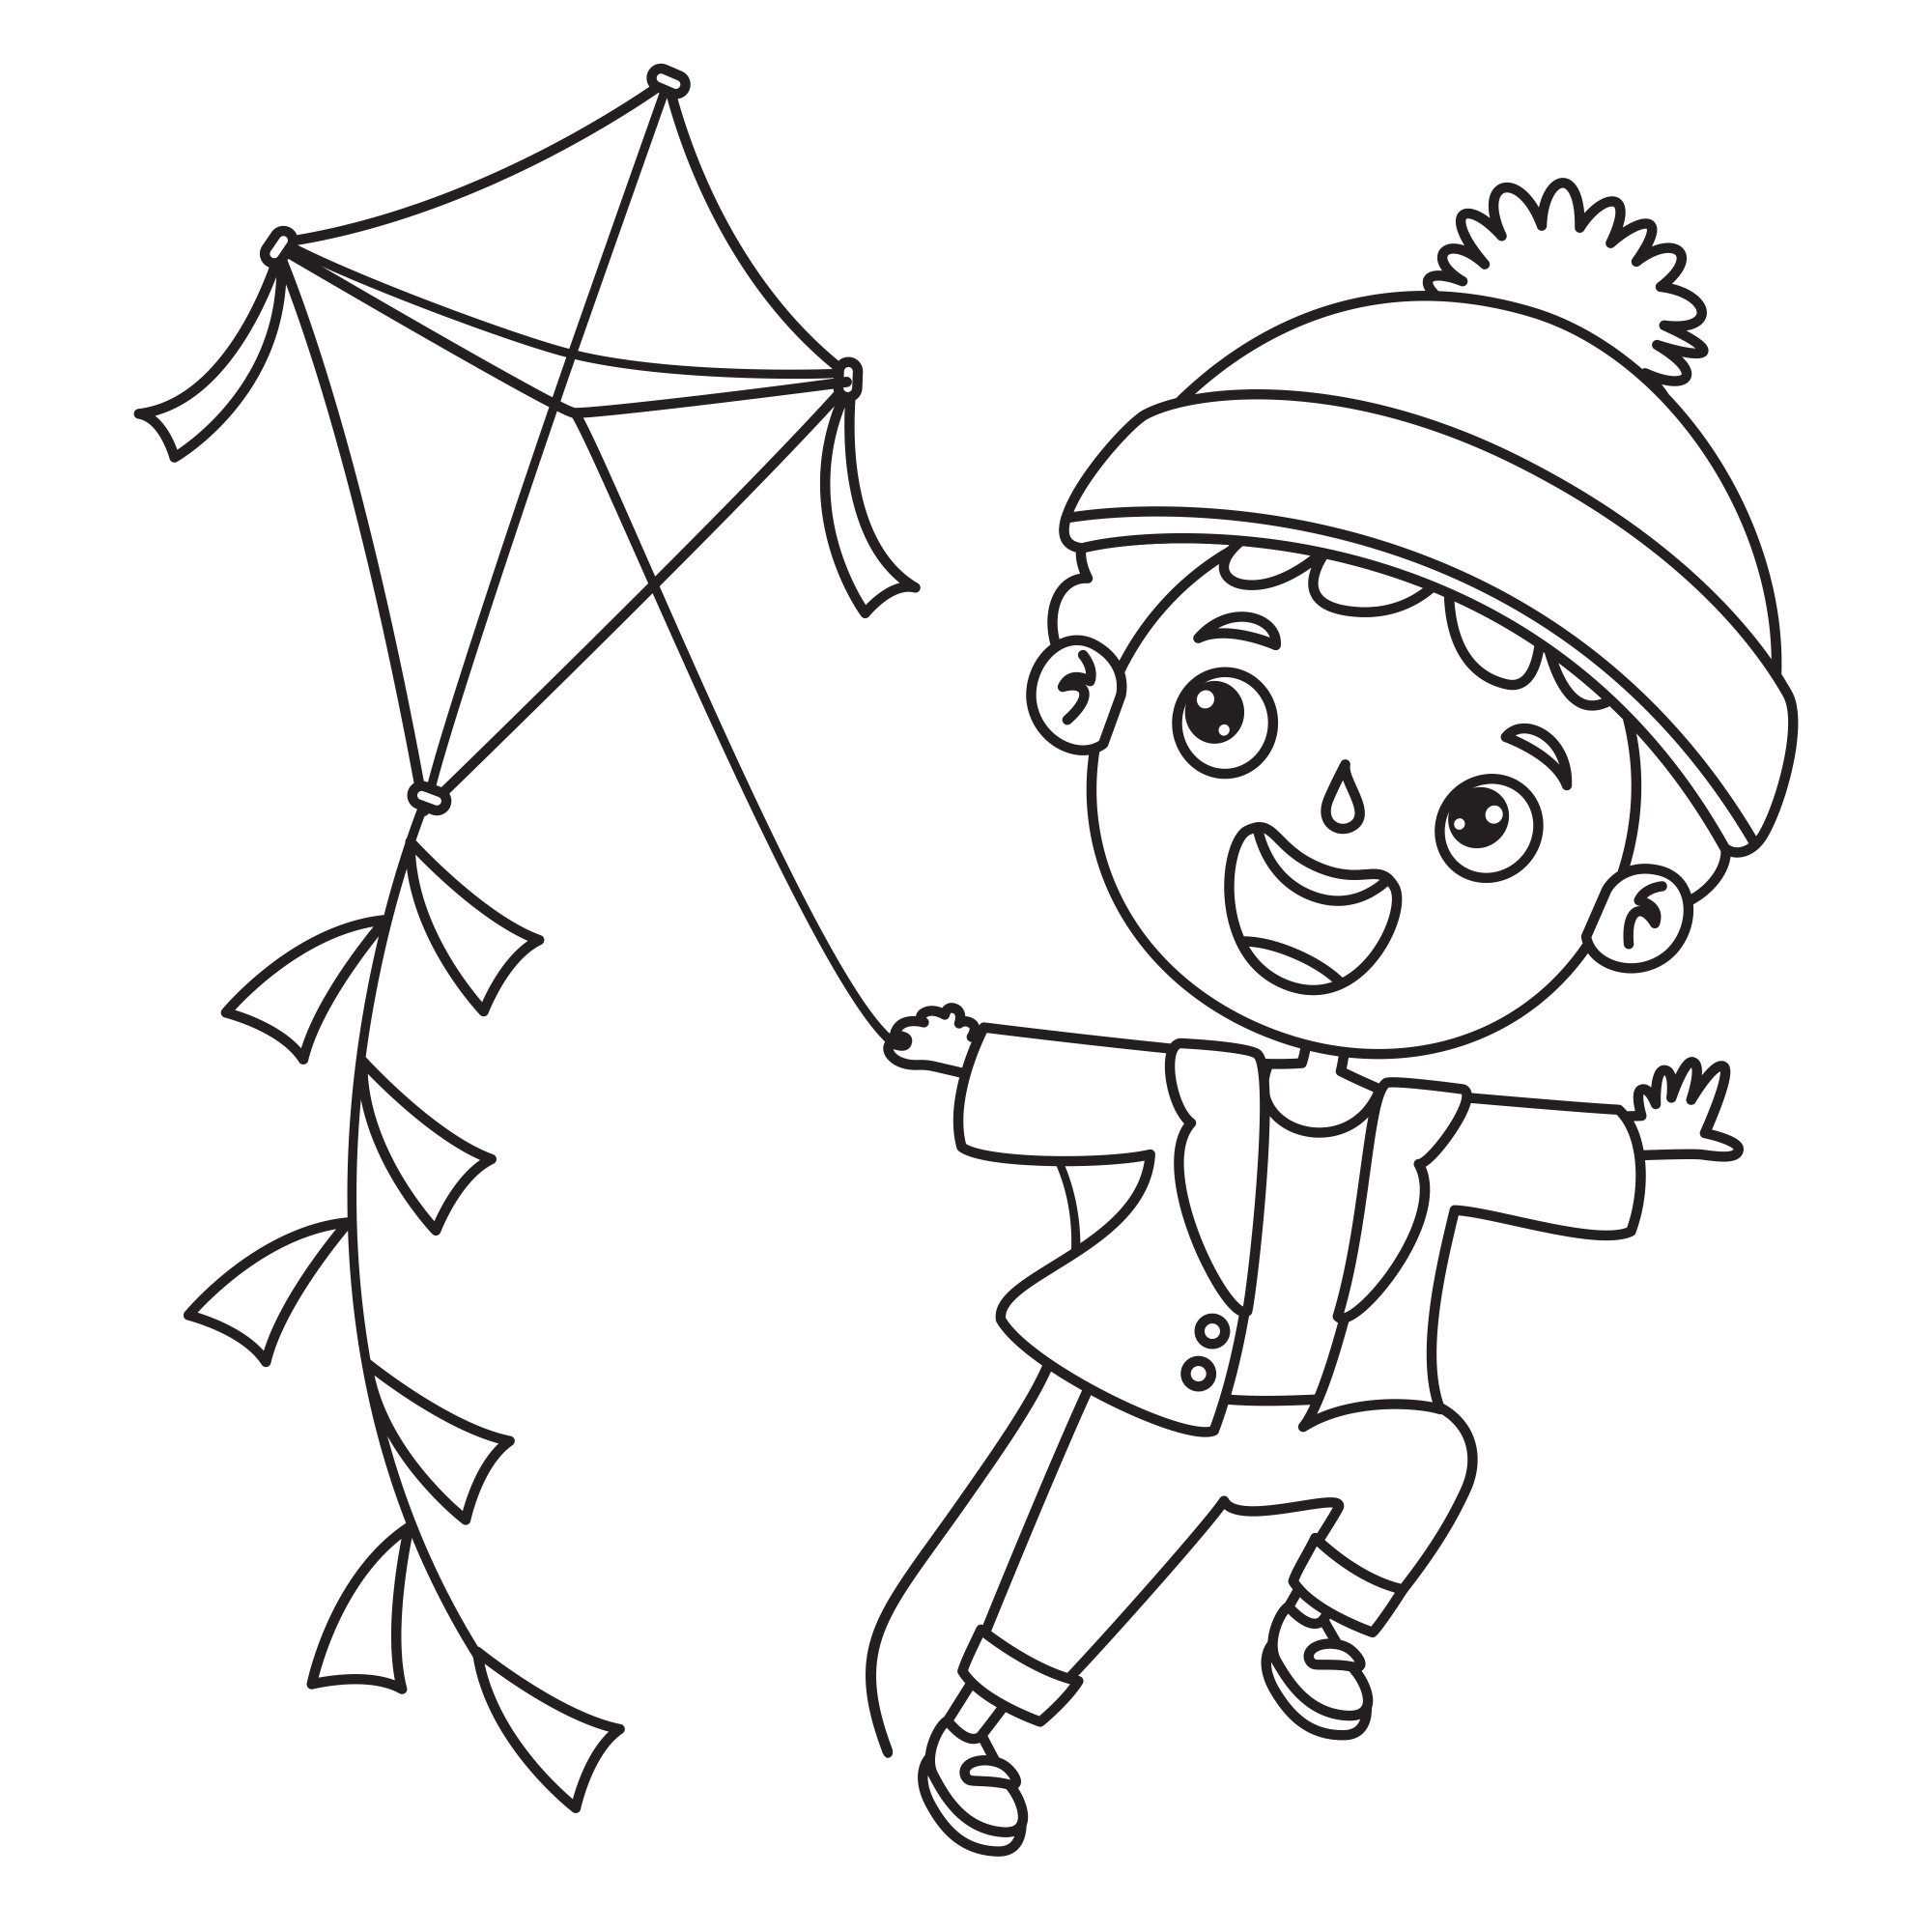 Раскраска для детей: мальчик в шапке запускает воздушного змея